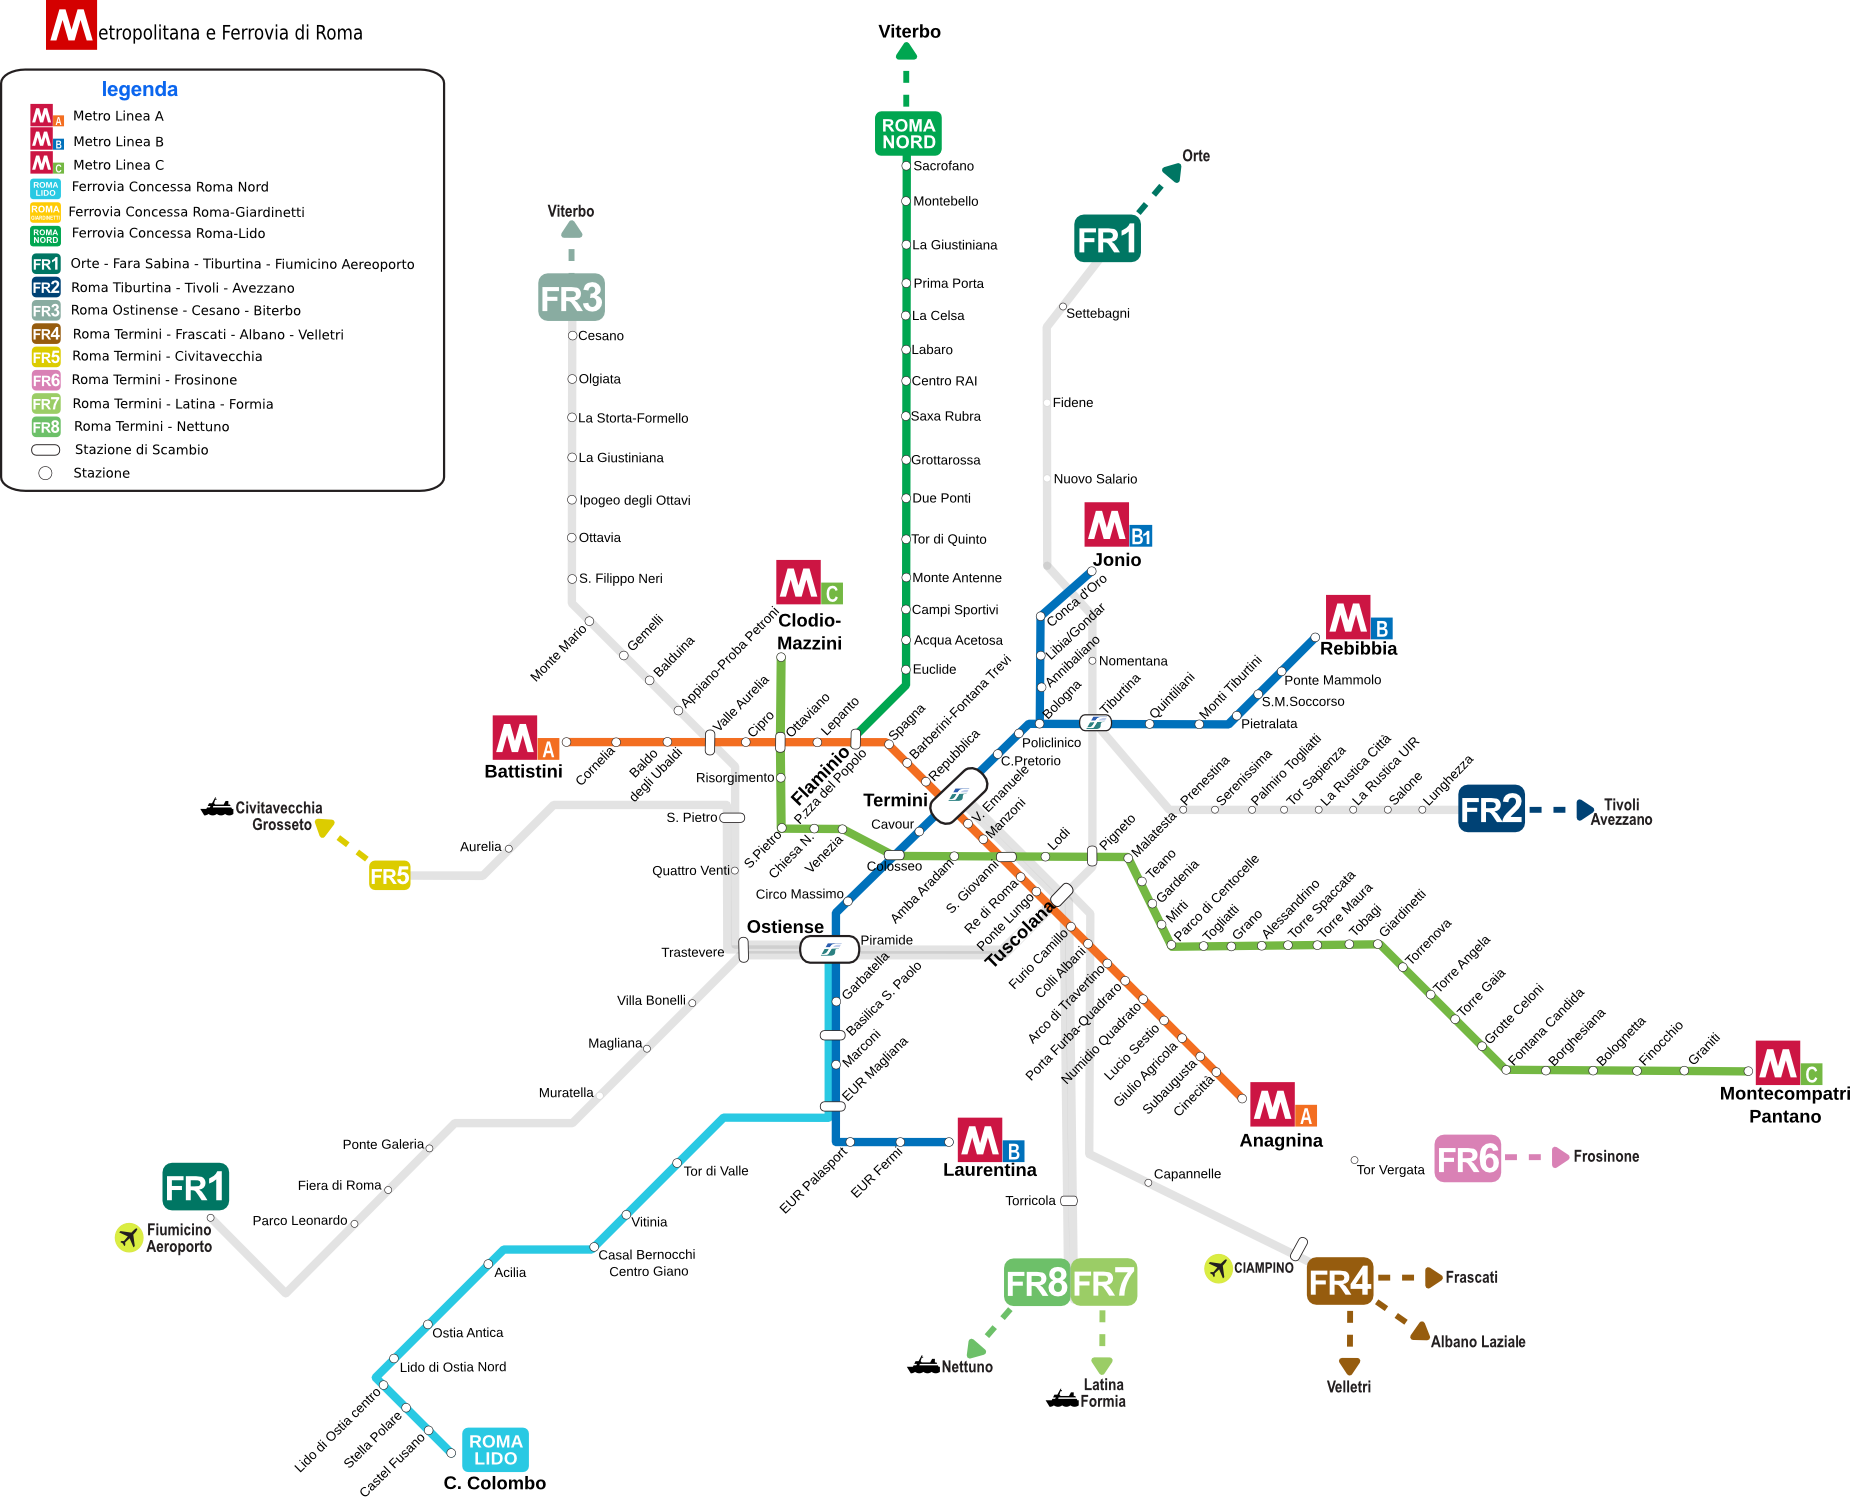 马德里地铁线路图片